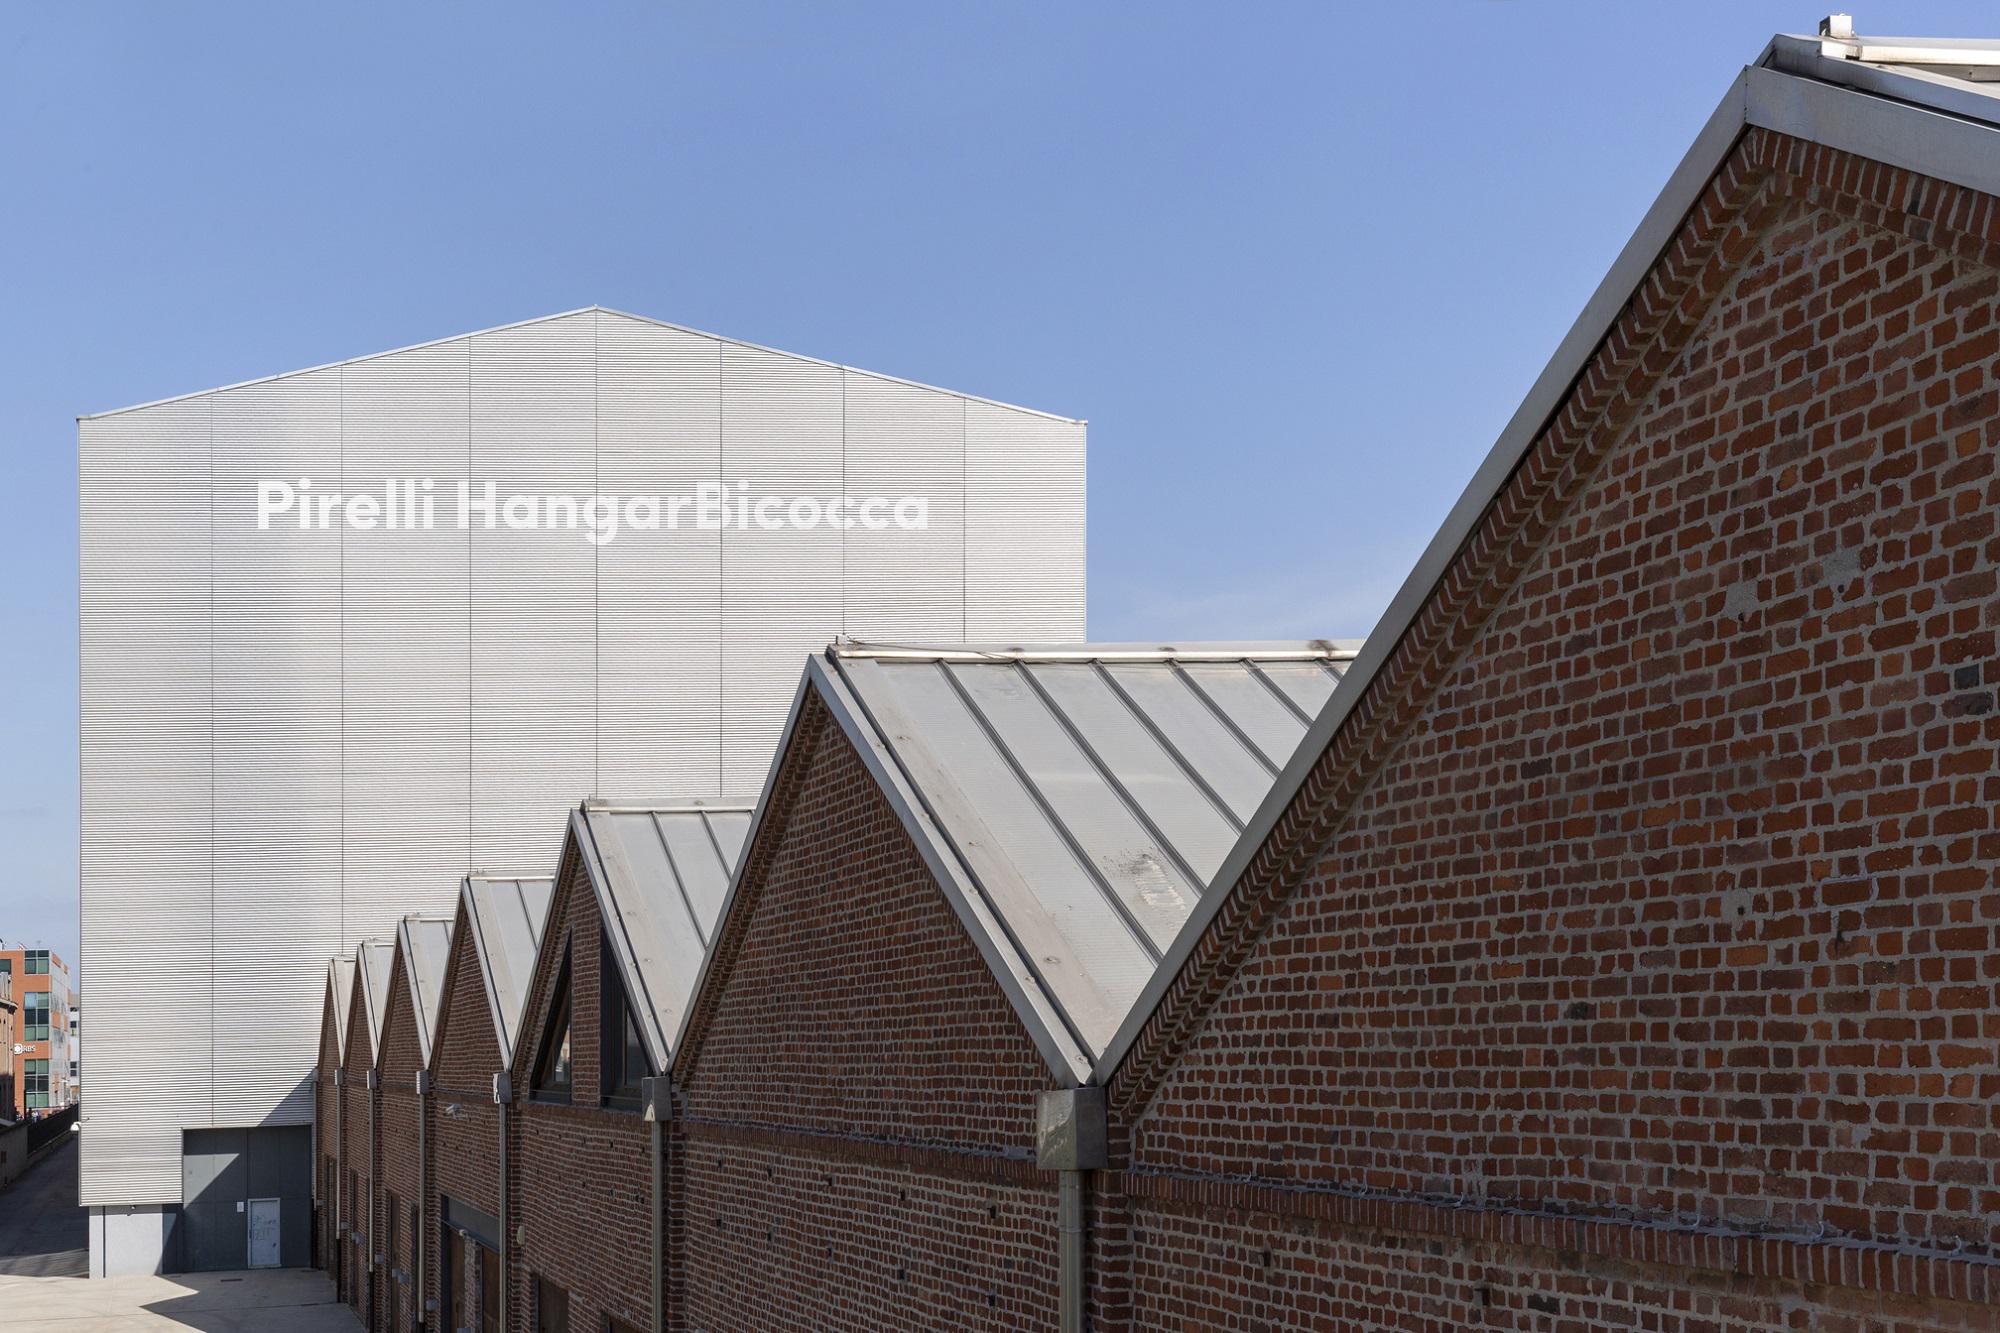 Veduta dello spazio delle Navate, Pirelli HangarBicocca, Milano, 2014. Foto Agostino Osio